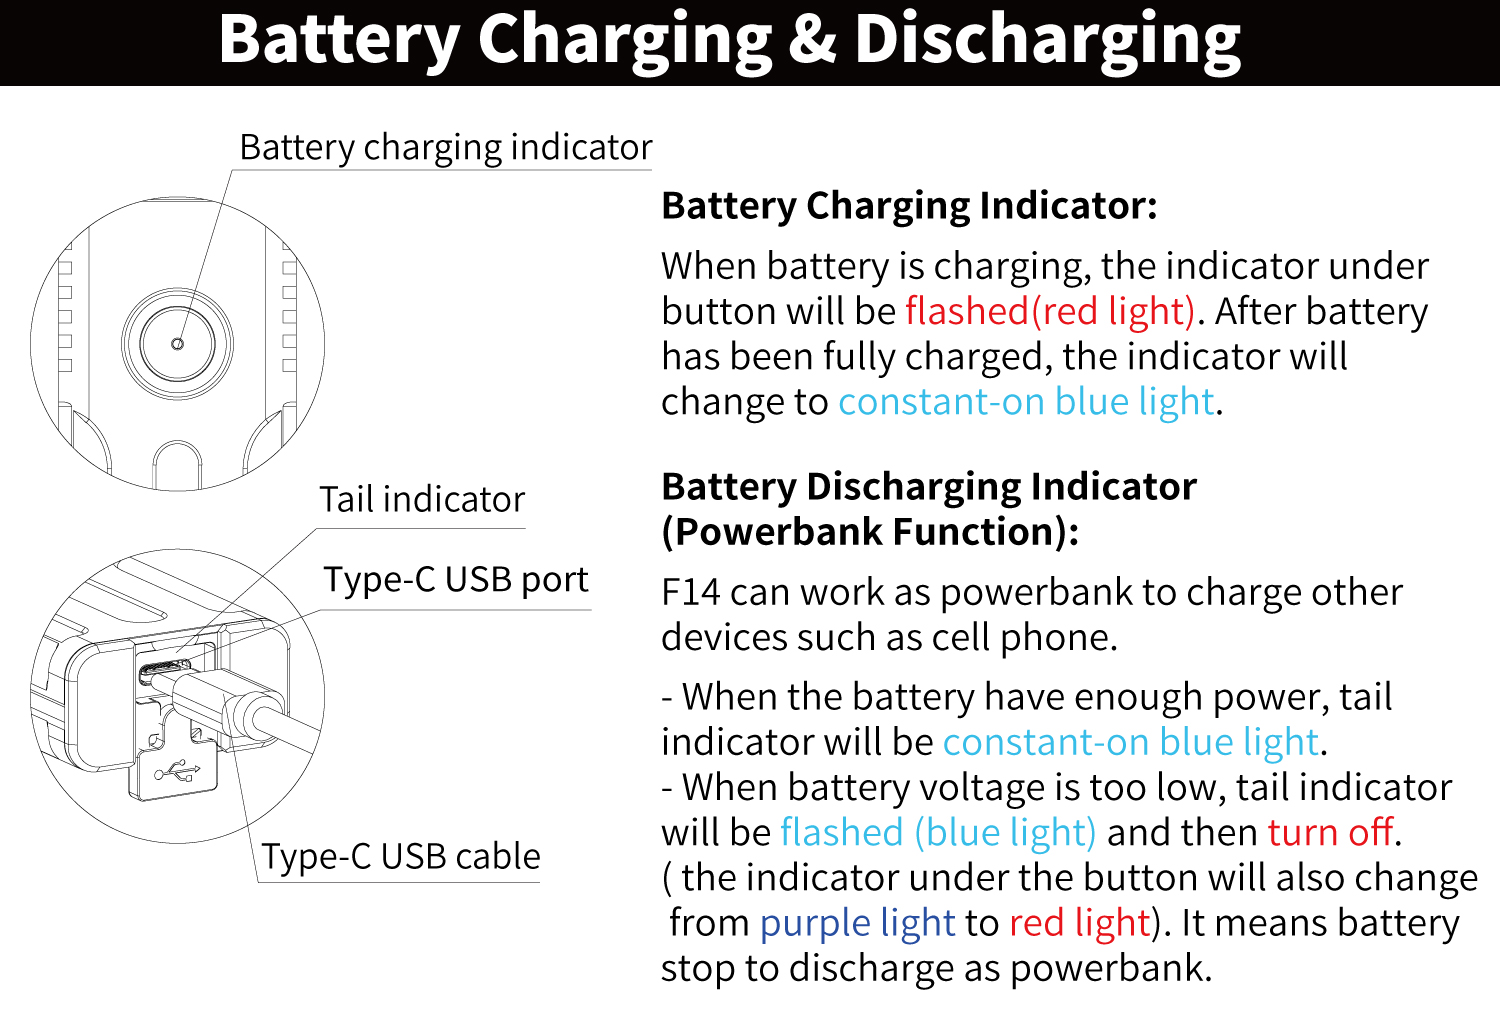 f14-battery-charging-n-discharging.jpg